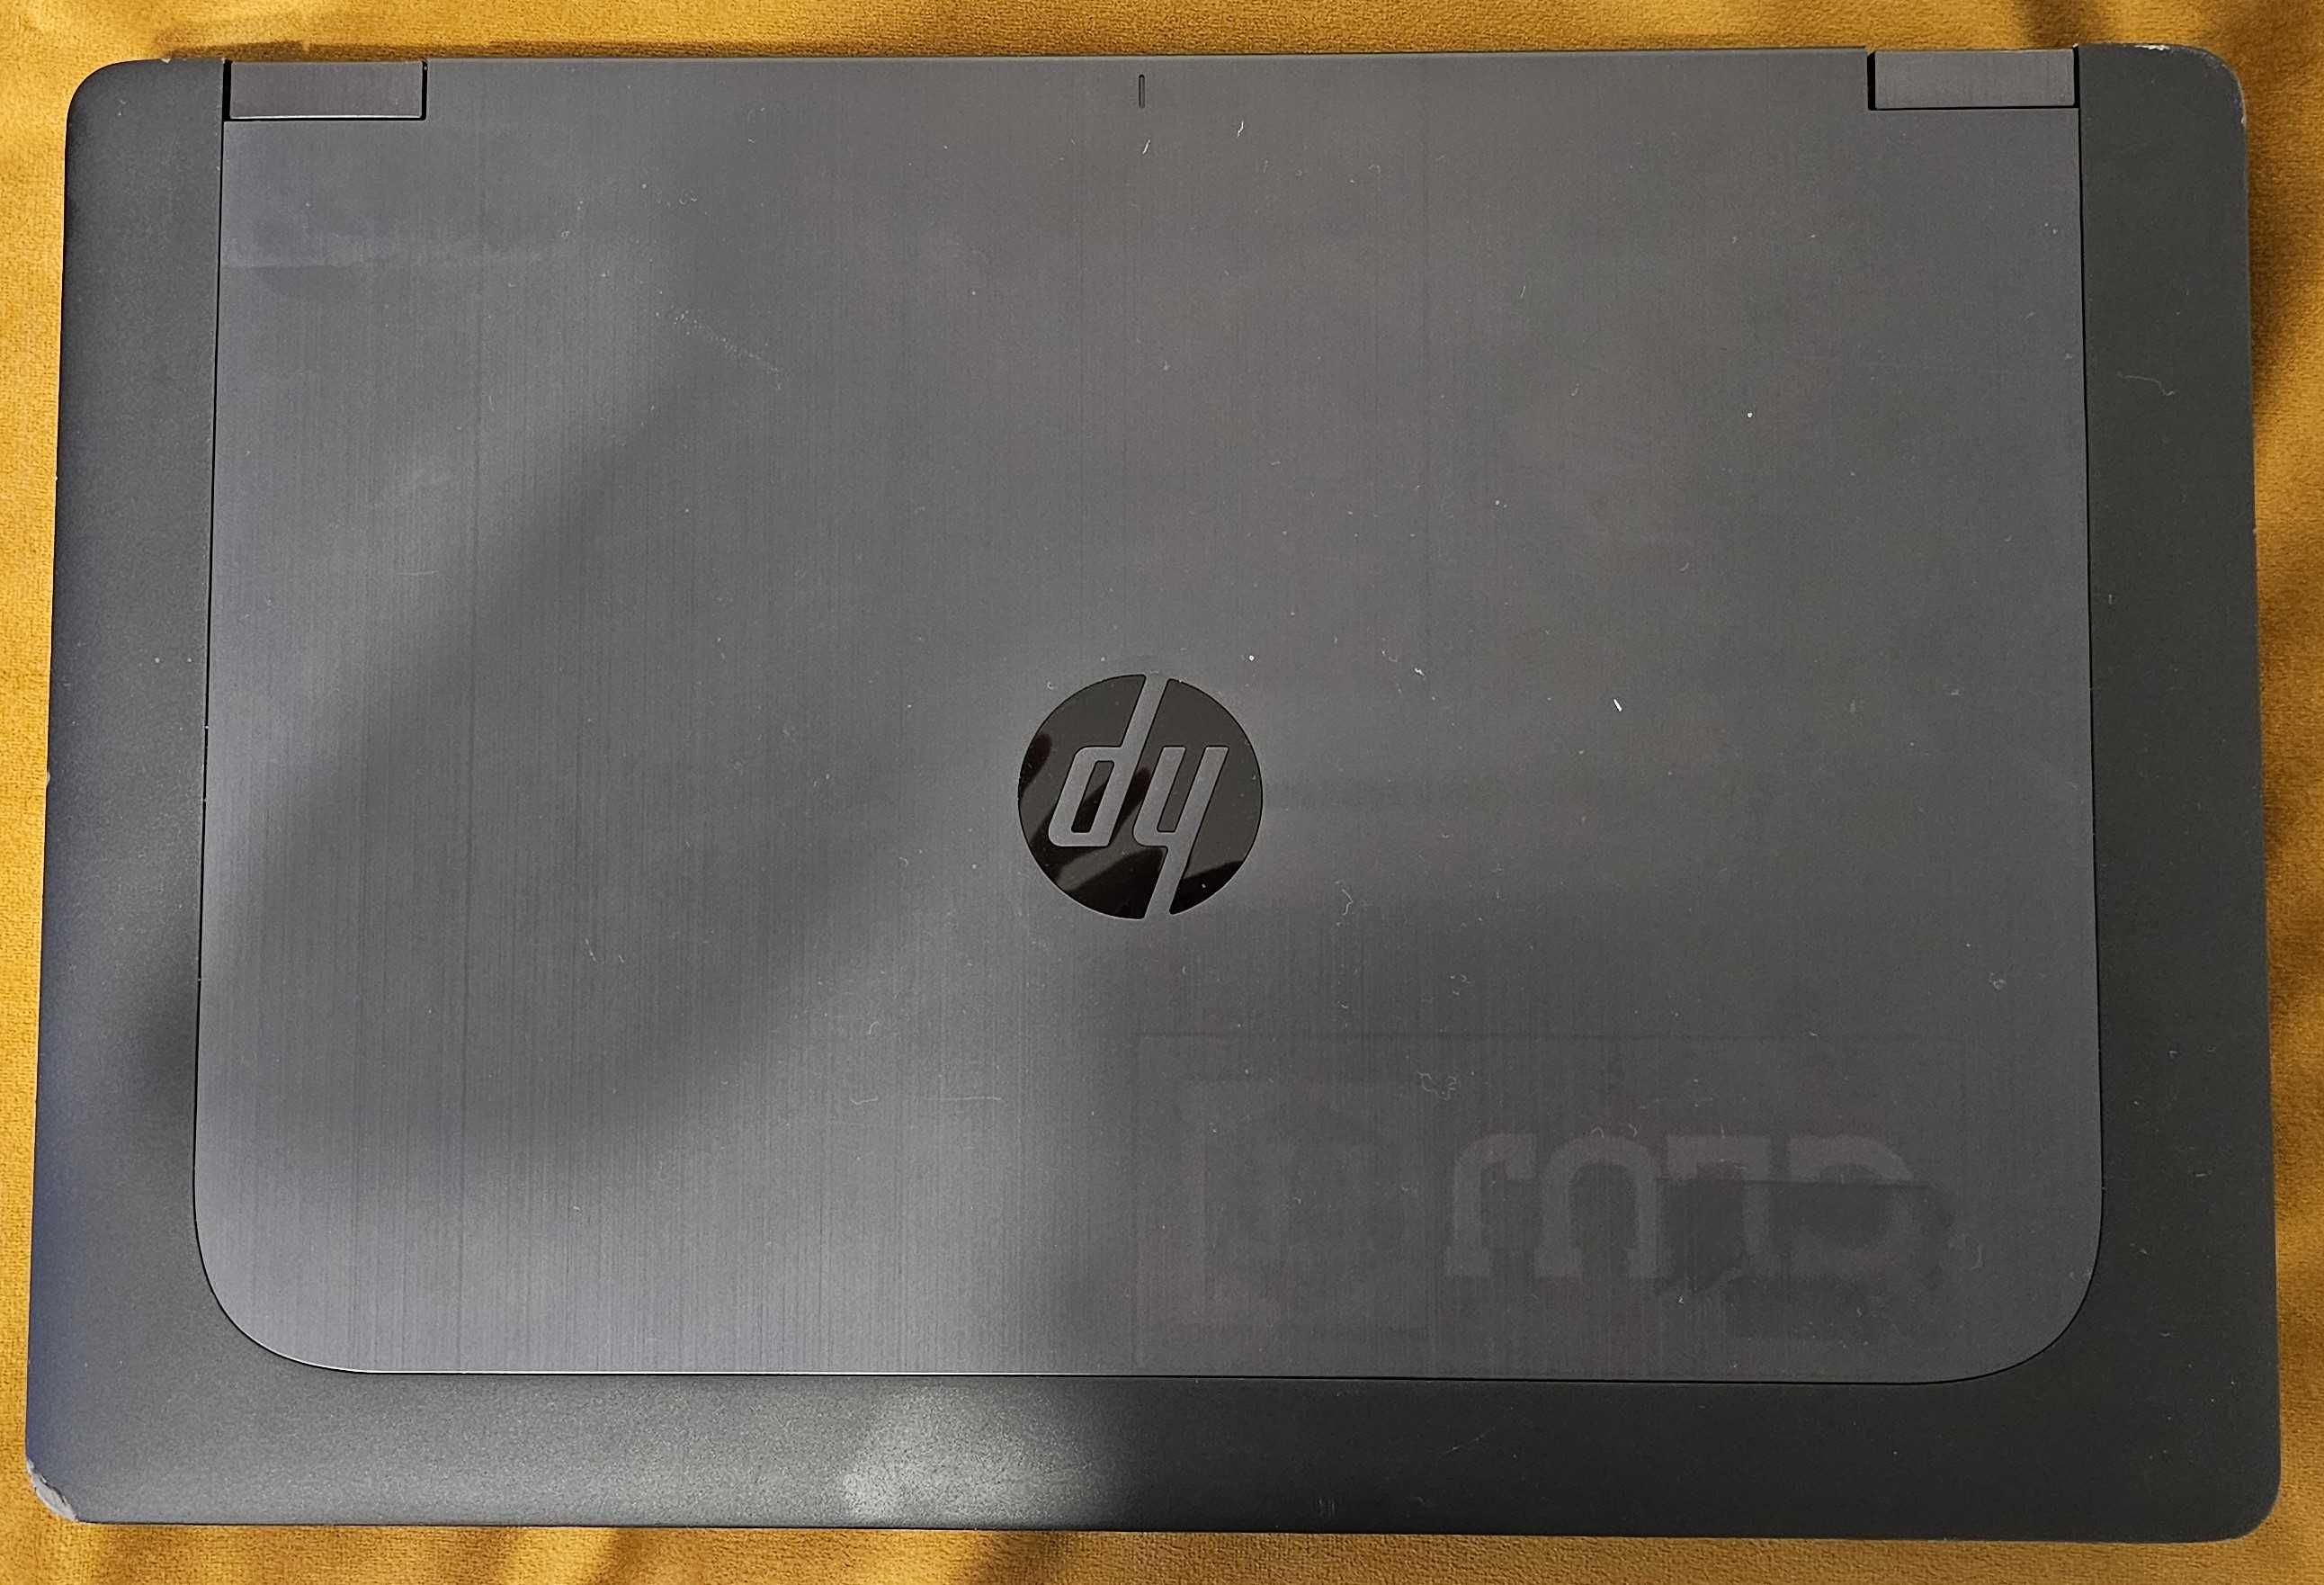 Laptop HP ZBook 15 - Intel i7-4700MQ, 8GB RAM, HDD 256GB+1000GB